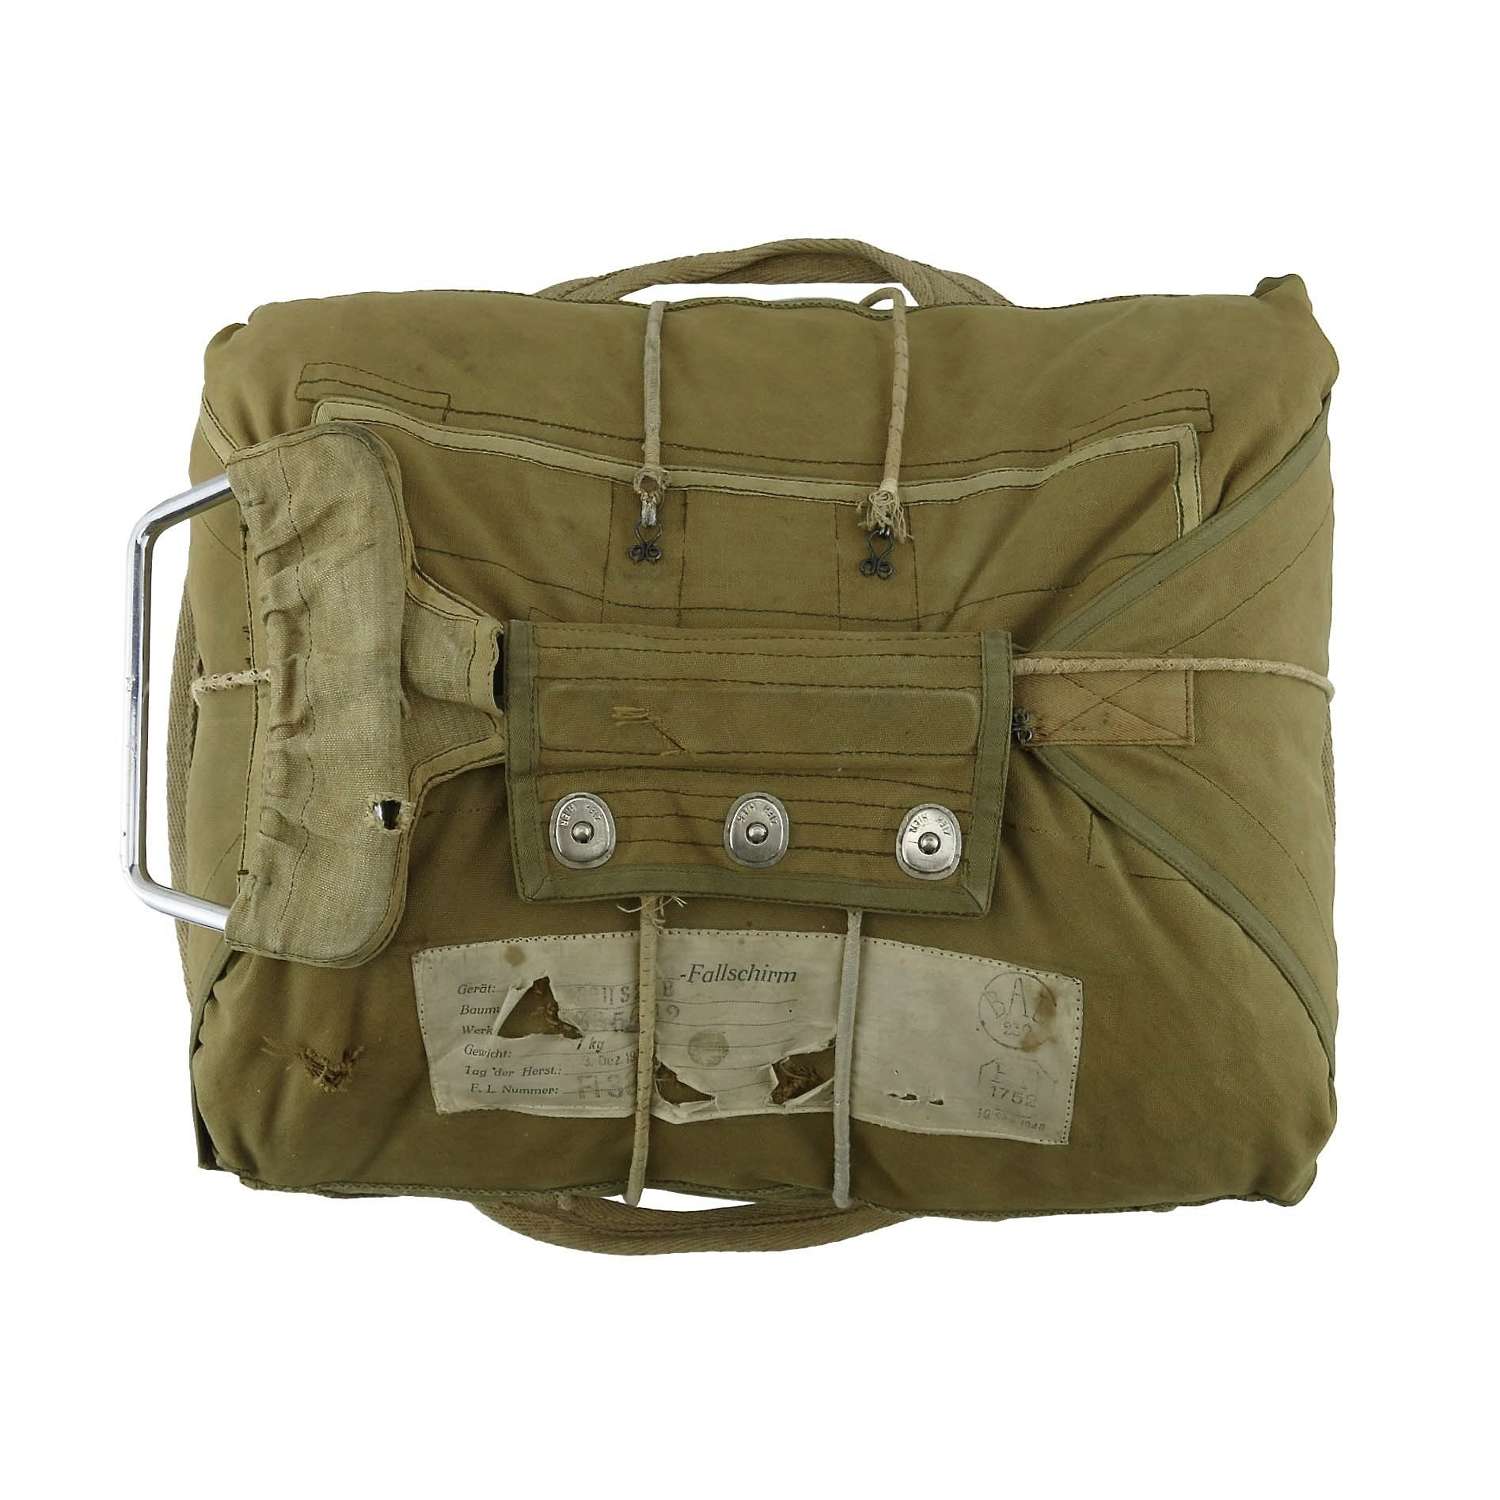 Luftwaffe chest parachute pack, c.1940